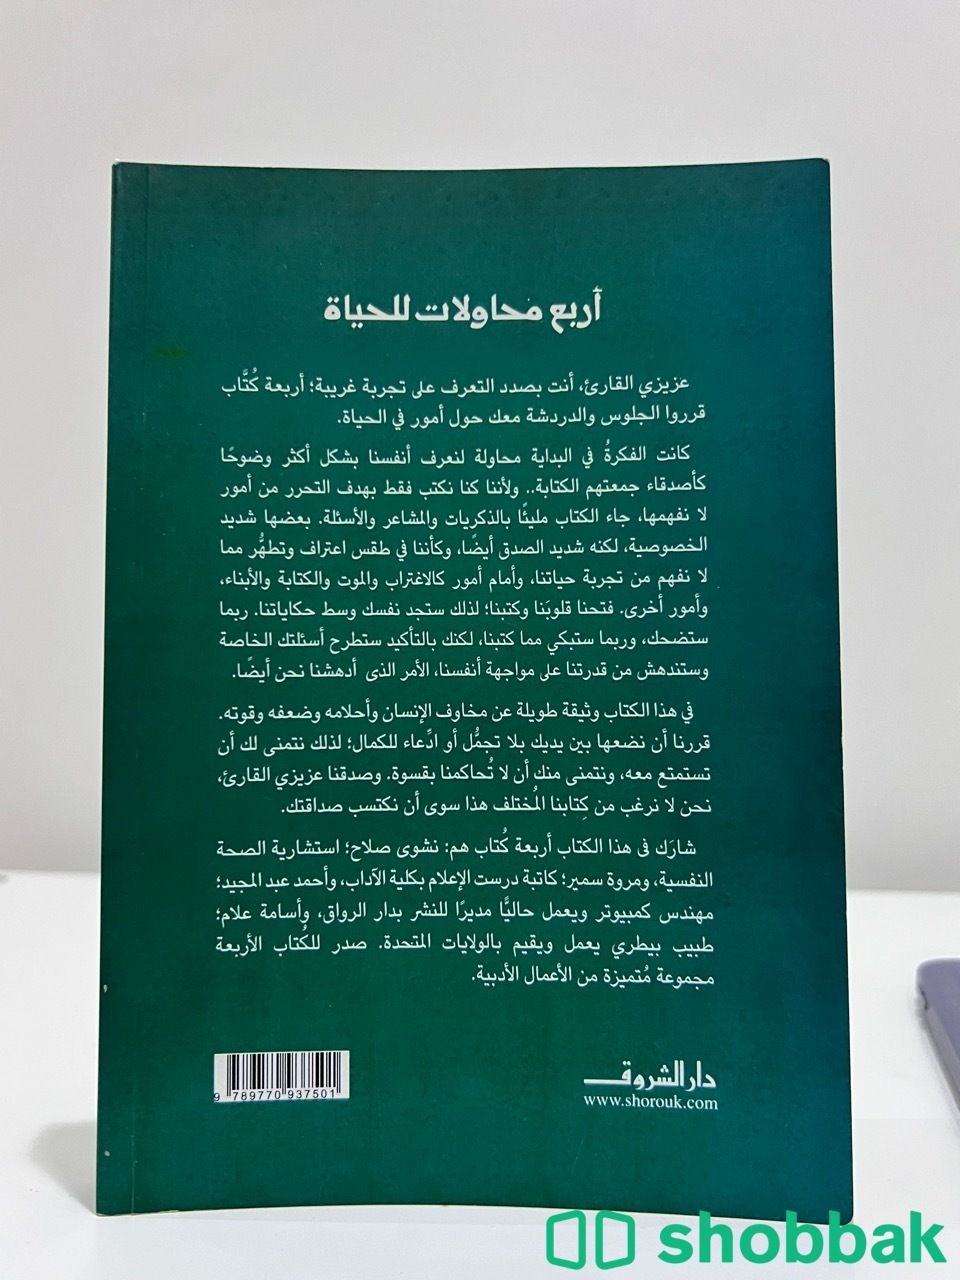 كتاب مميز 🌟 Shobbak Saudi Arabia